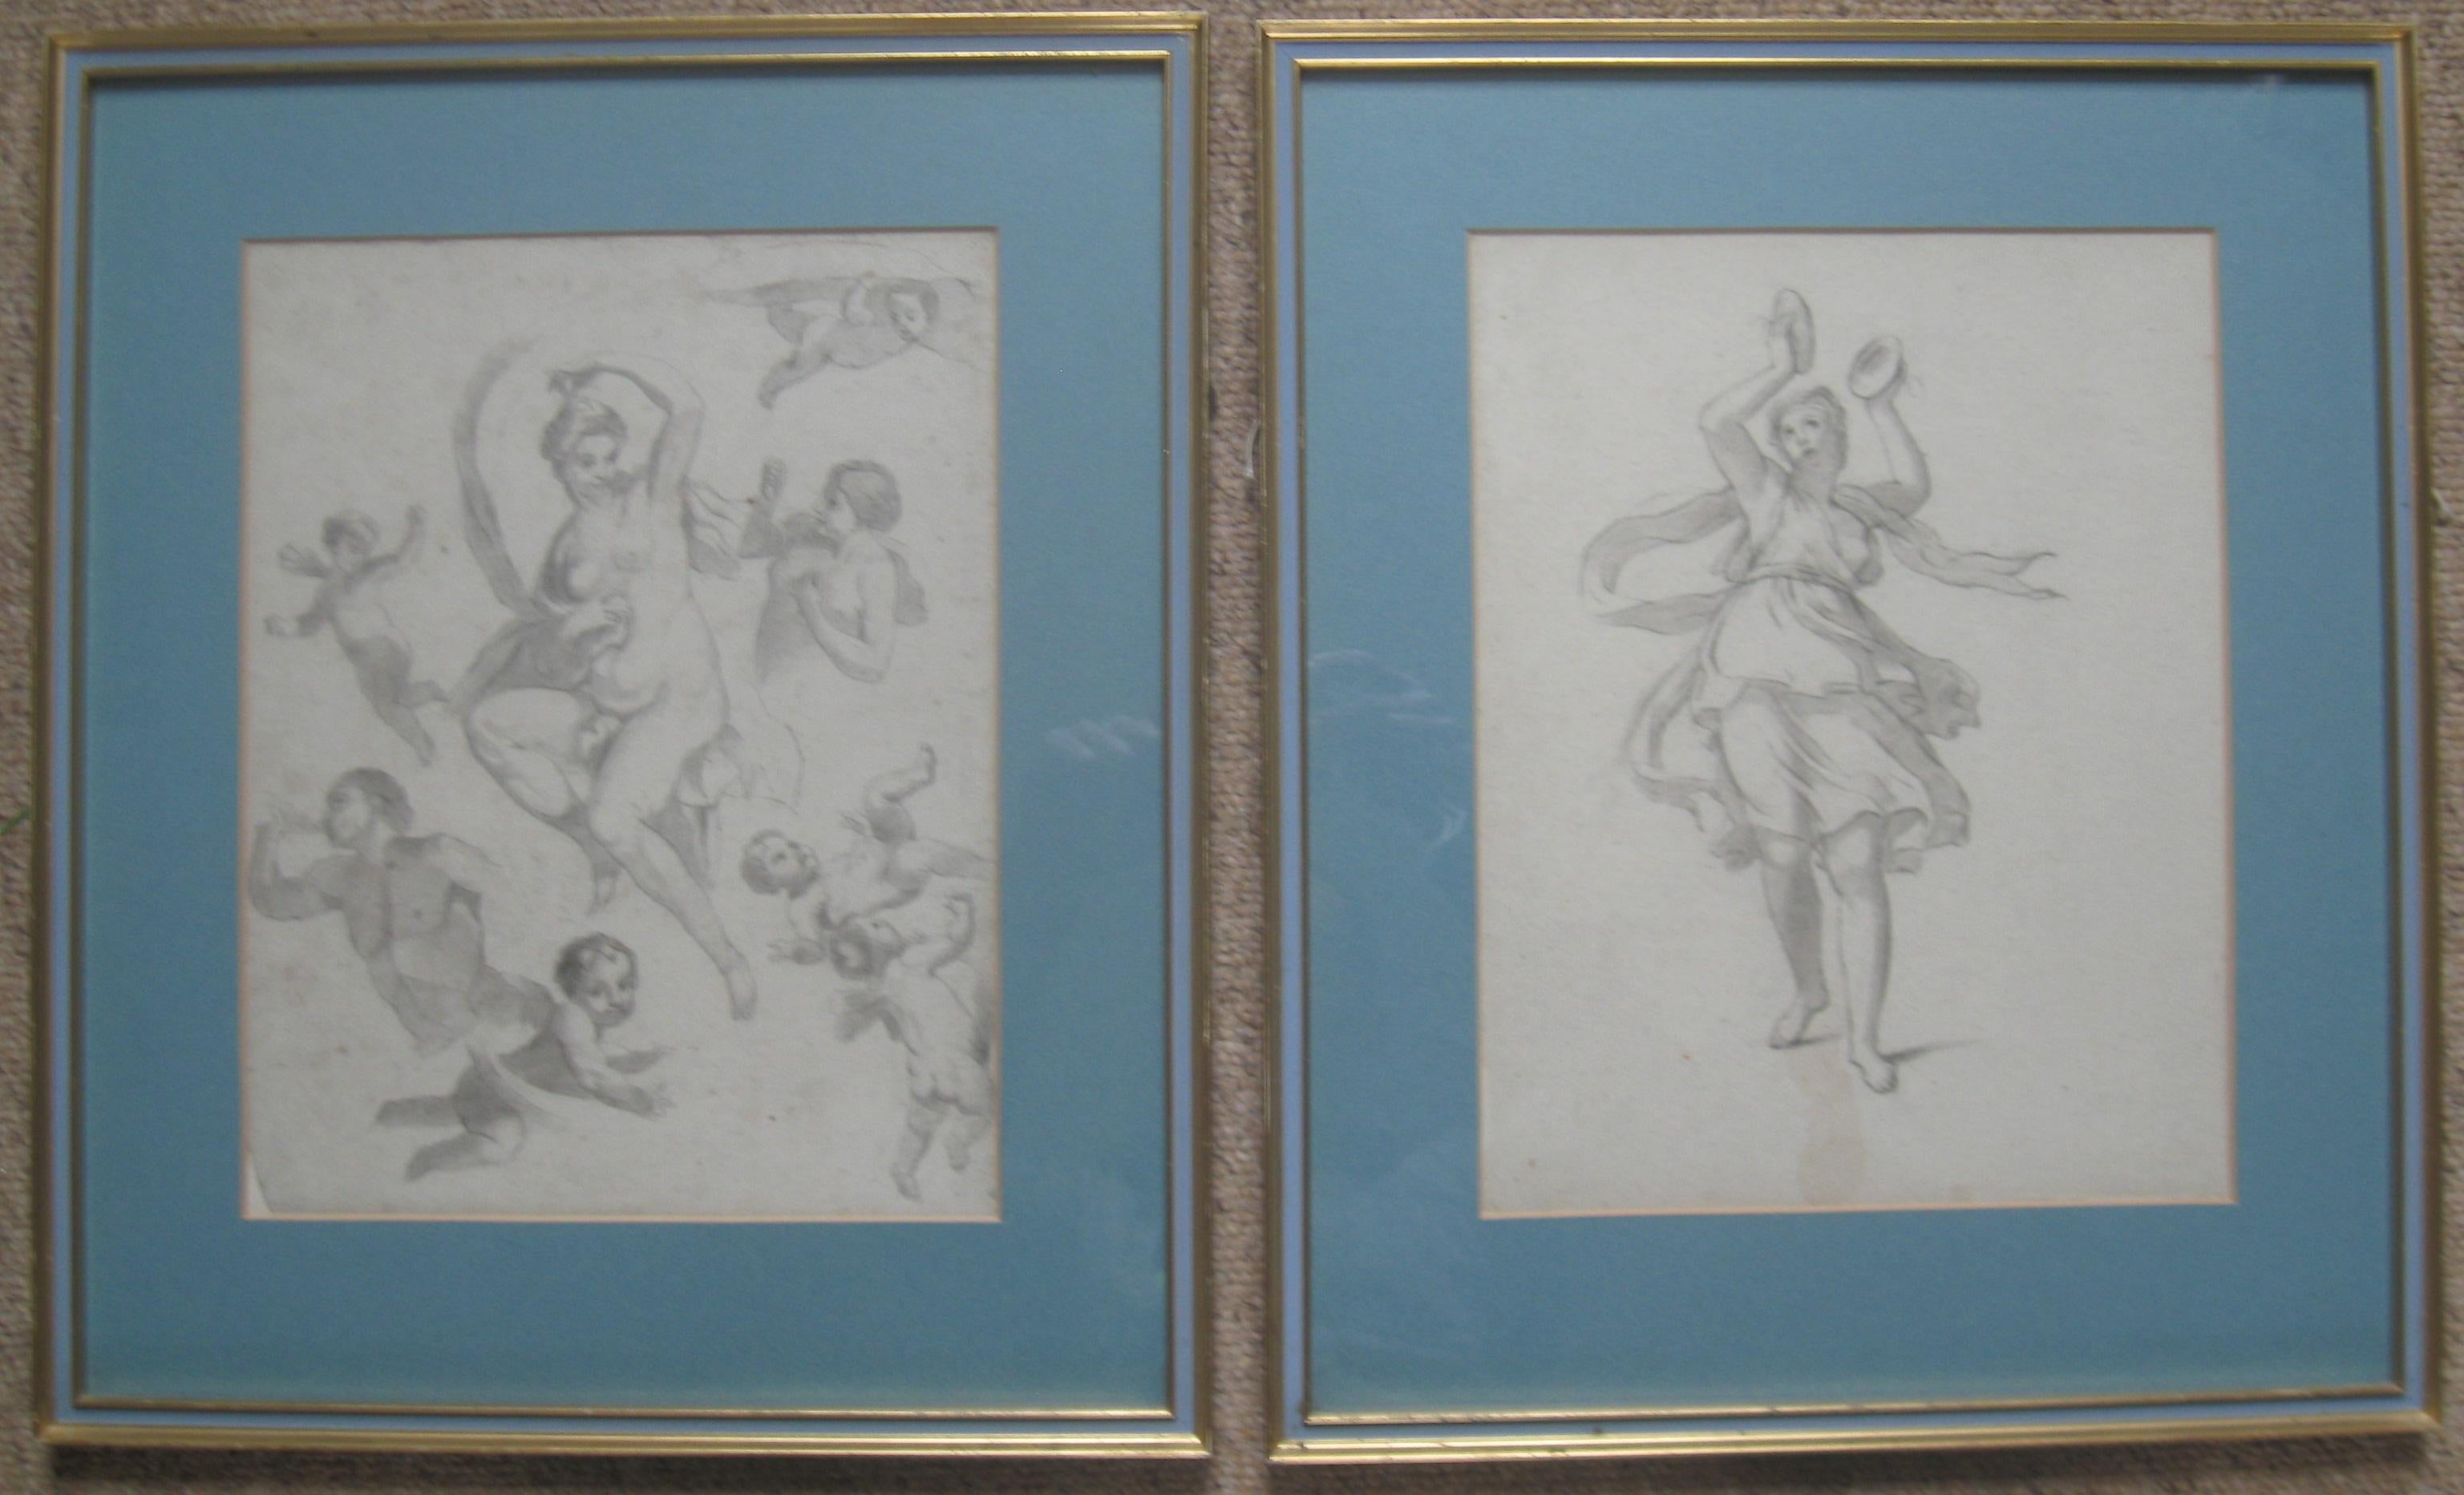 Figurative Print Unknown - La société Médicis : École de Tiepolo (1696-1770) Impressions d'art vers 1930